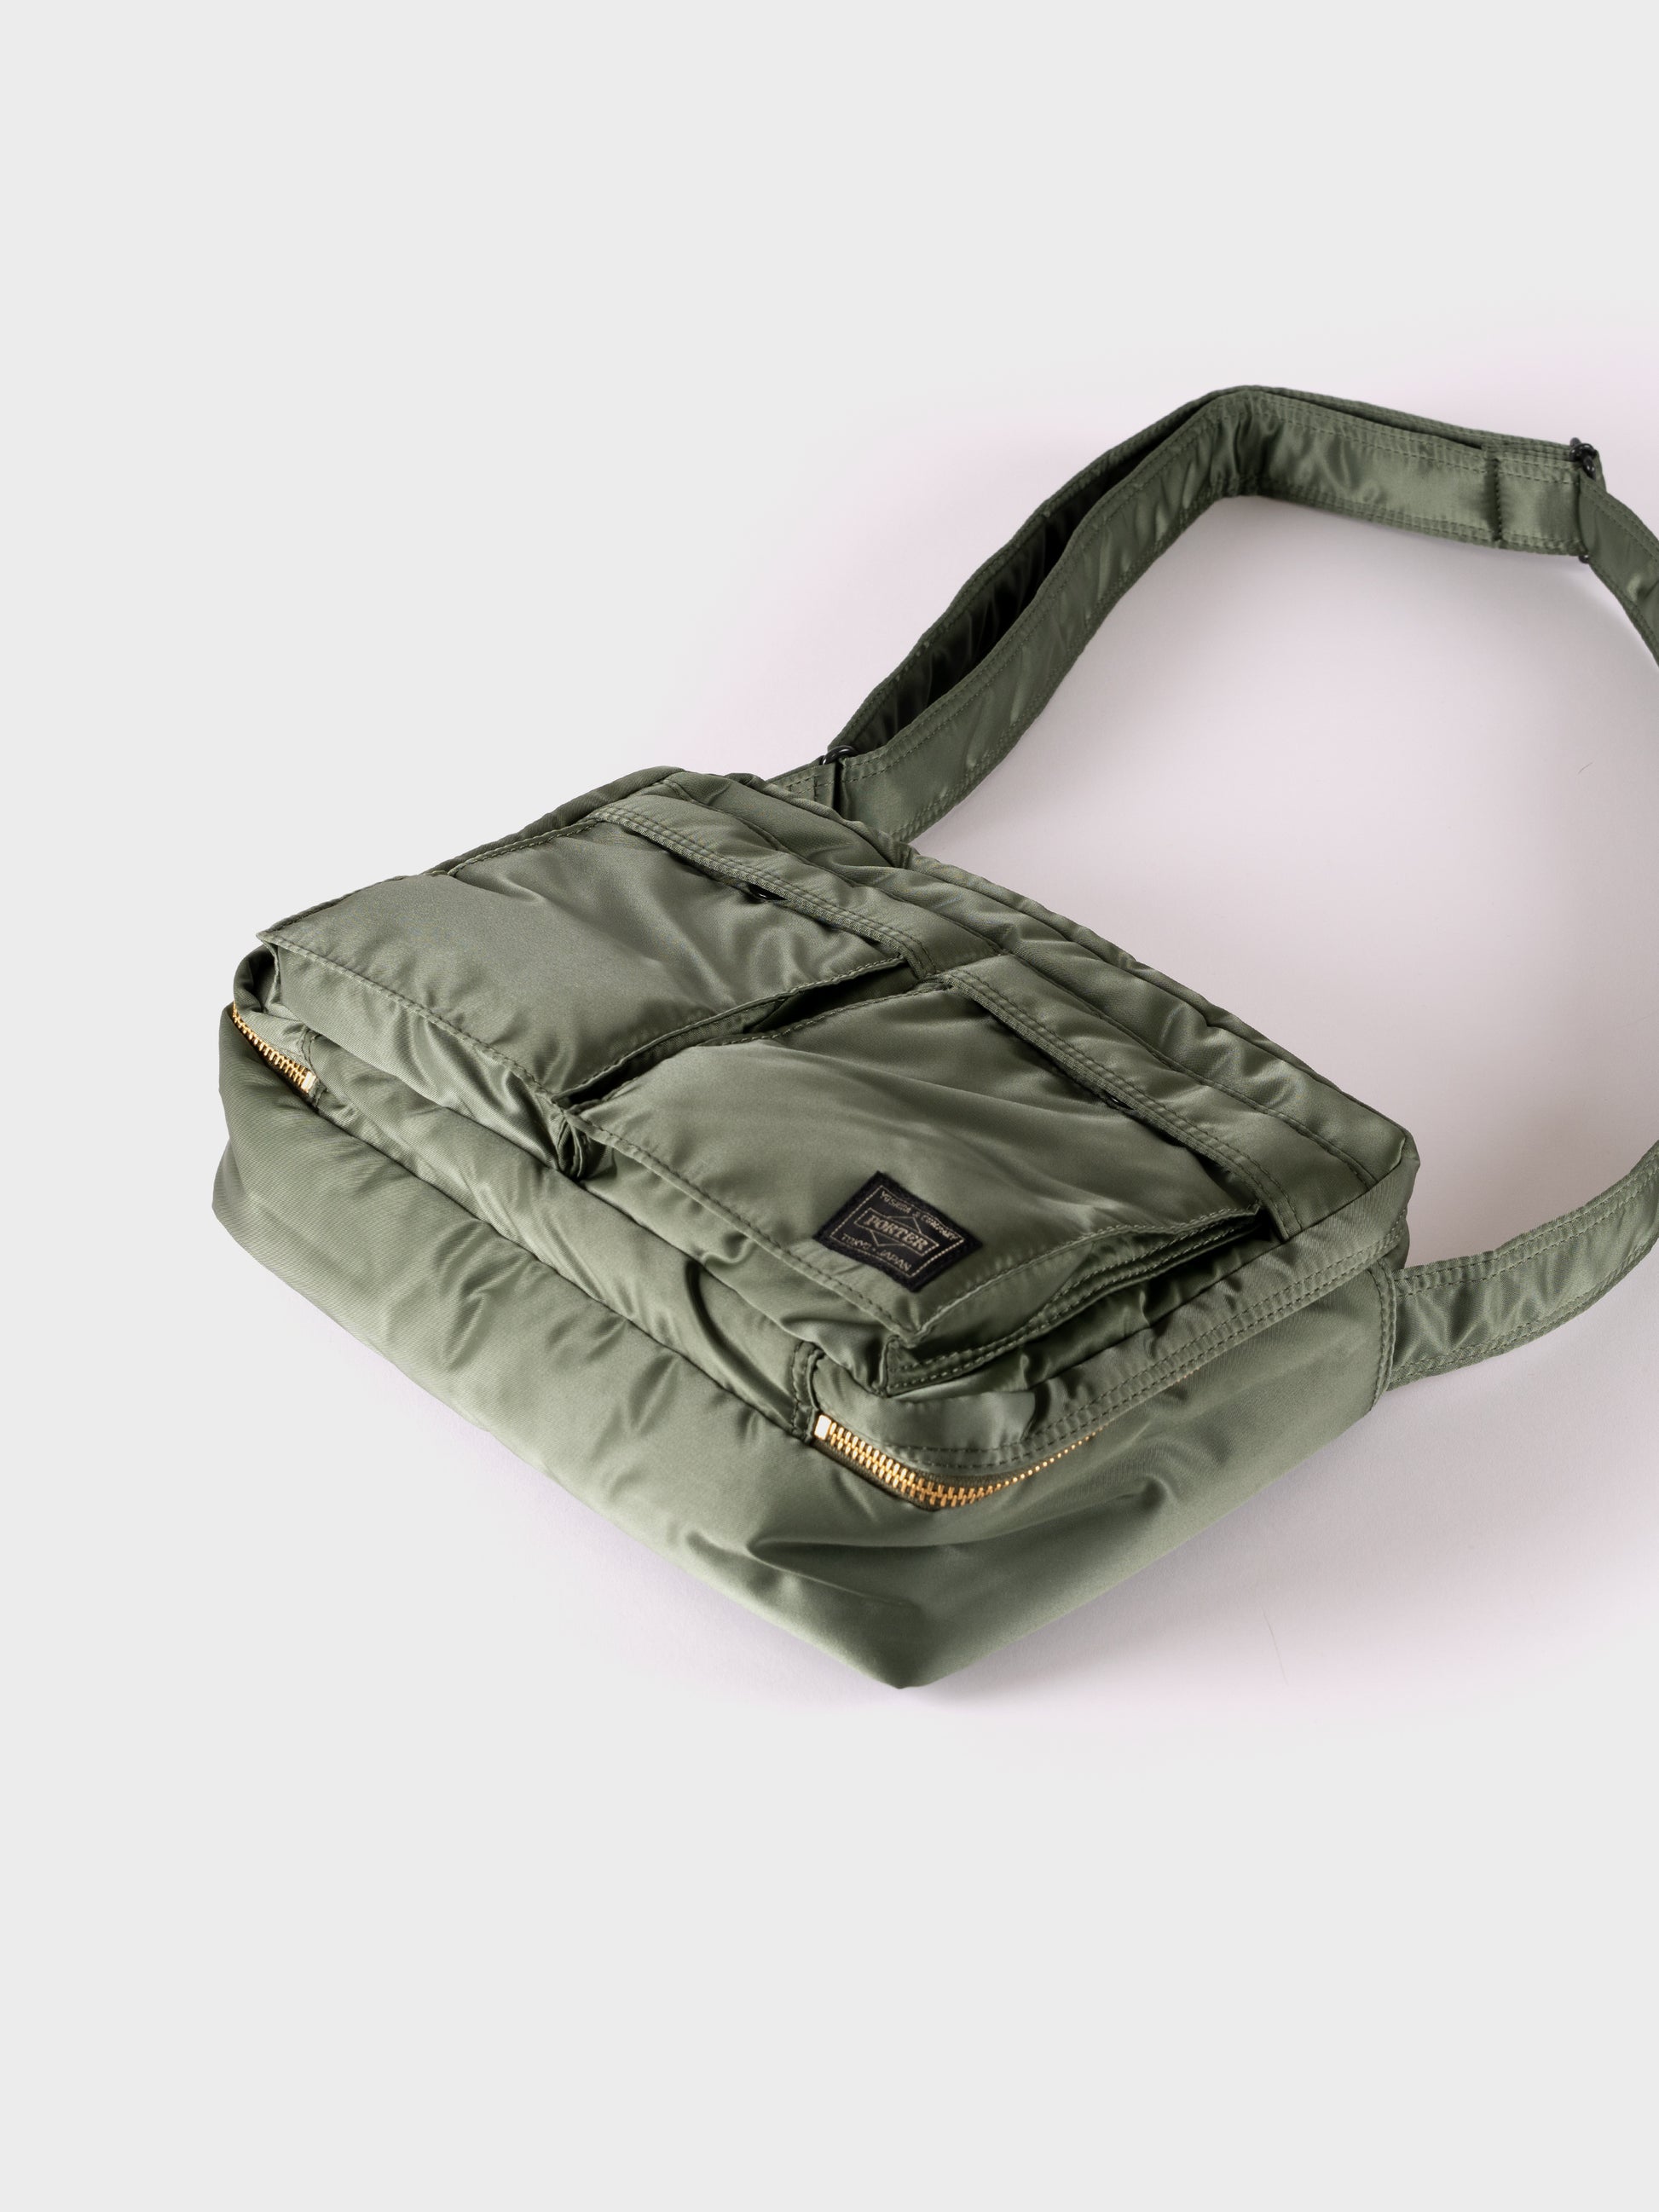 Porter-Yoshida & Co Tanker Shoulder Bag L - Sage Green